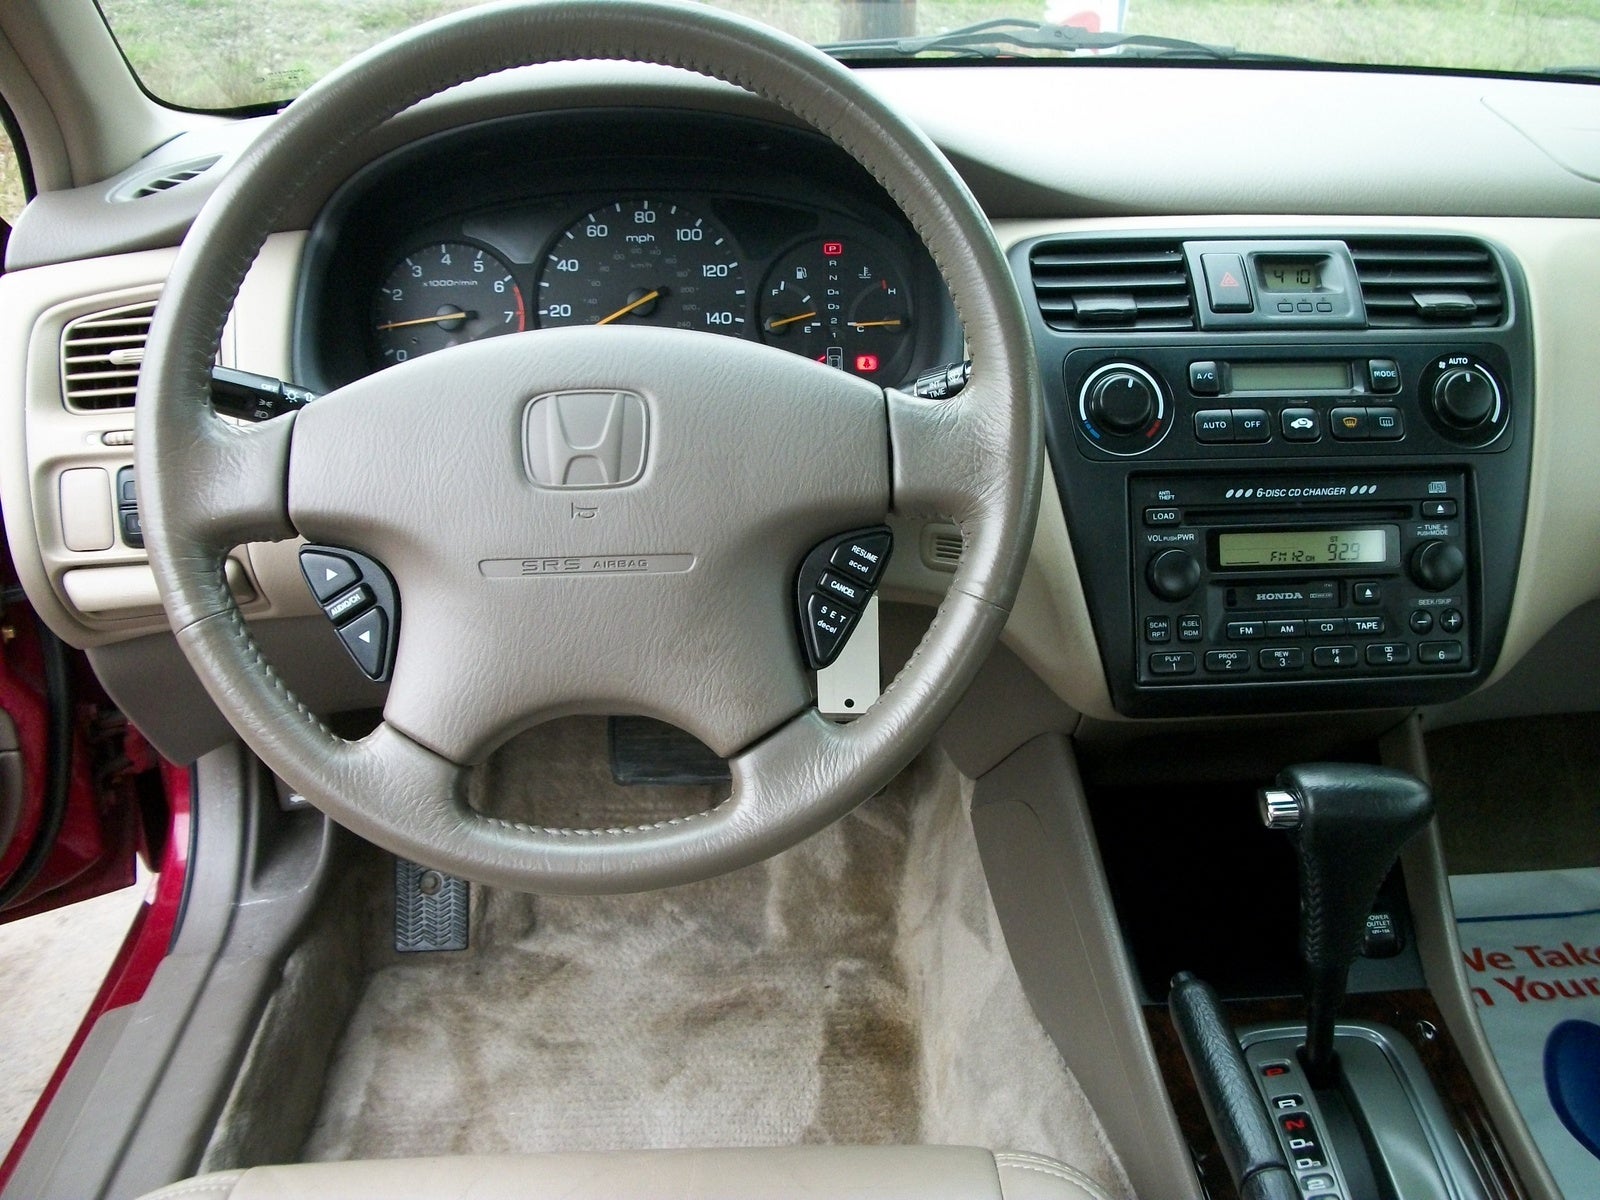 2002 Honda Accord  Interior Pictures  CarGurus